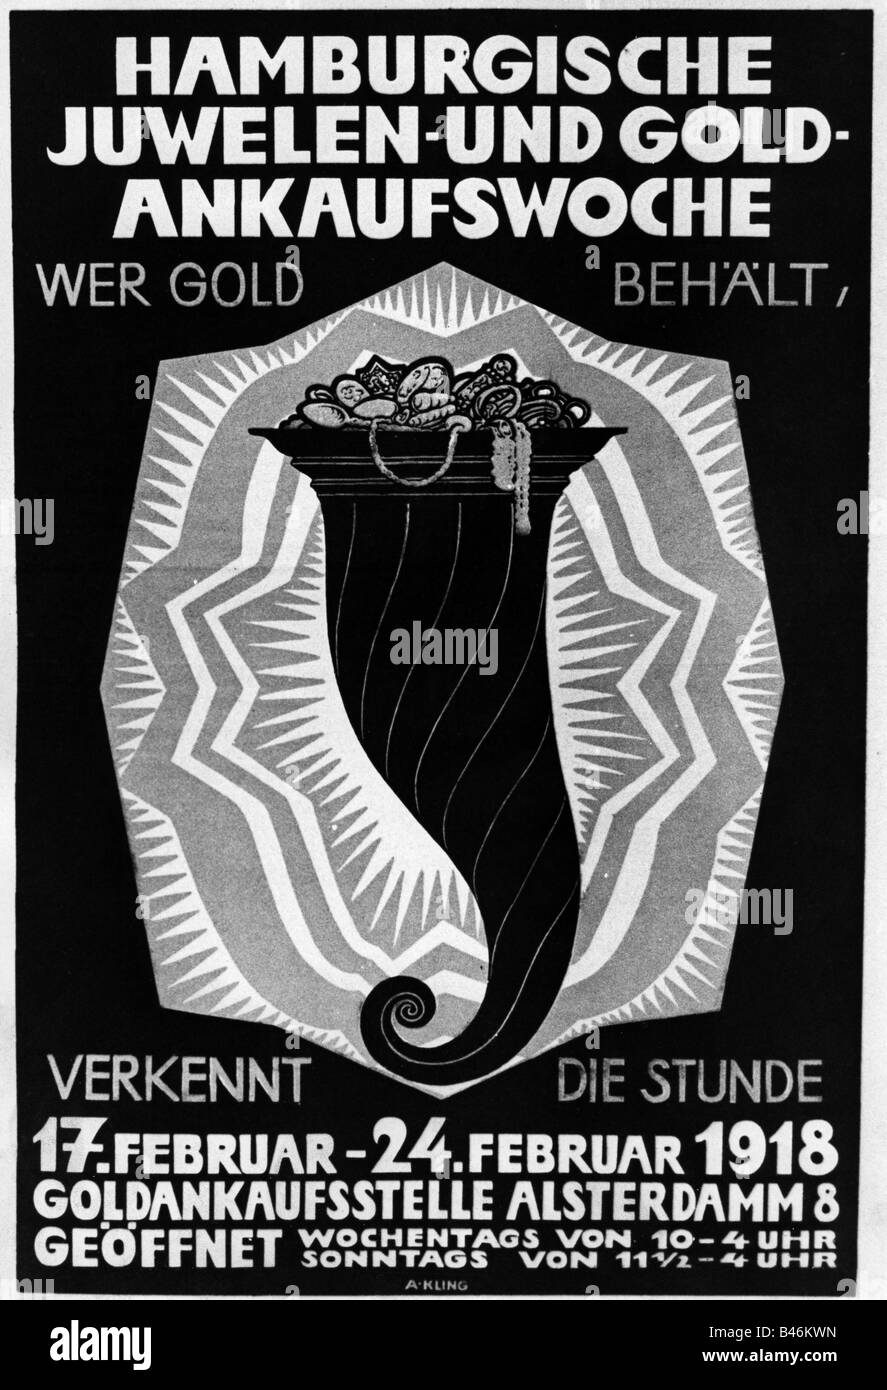 Eventos, Primera Guerra Mundial / primera Guerra Mundial, propaganda, póster, llamado a vender oro y joyas al estado, por A. Kling, Alemania, 1918, Foto de stock